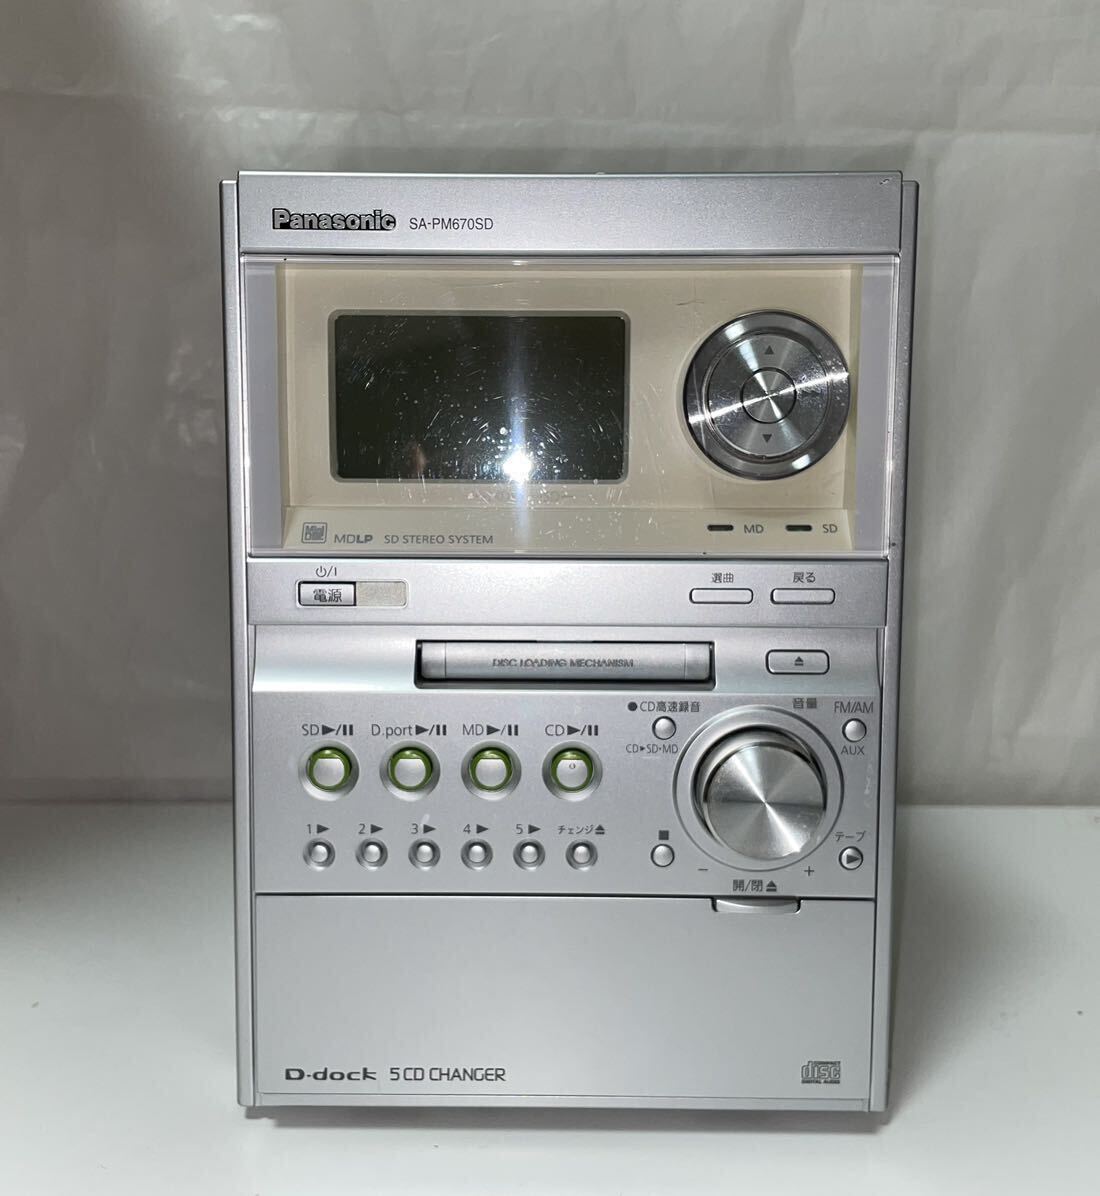  полная распродажа цена Panasonic аудио 2008 год производства CD MD магнитола Panasonic SA-PM670SD retro музыкальный центр корпус музыка 